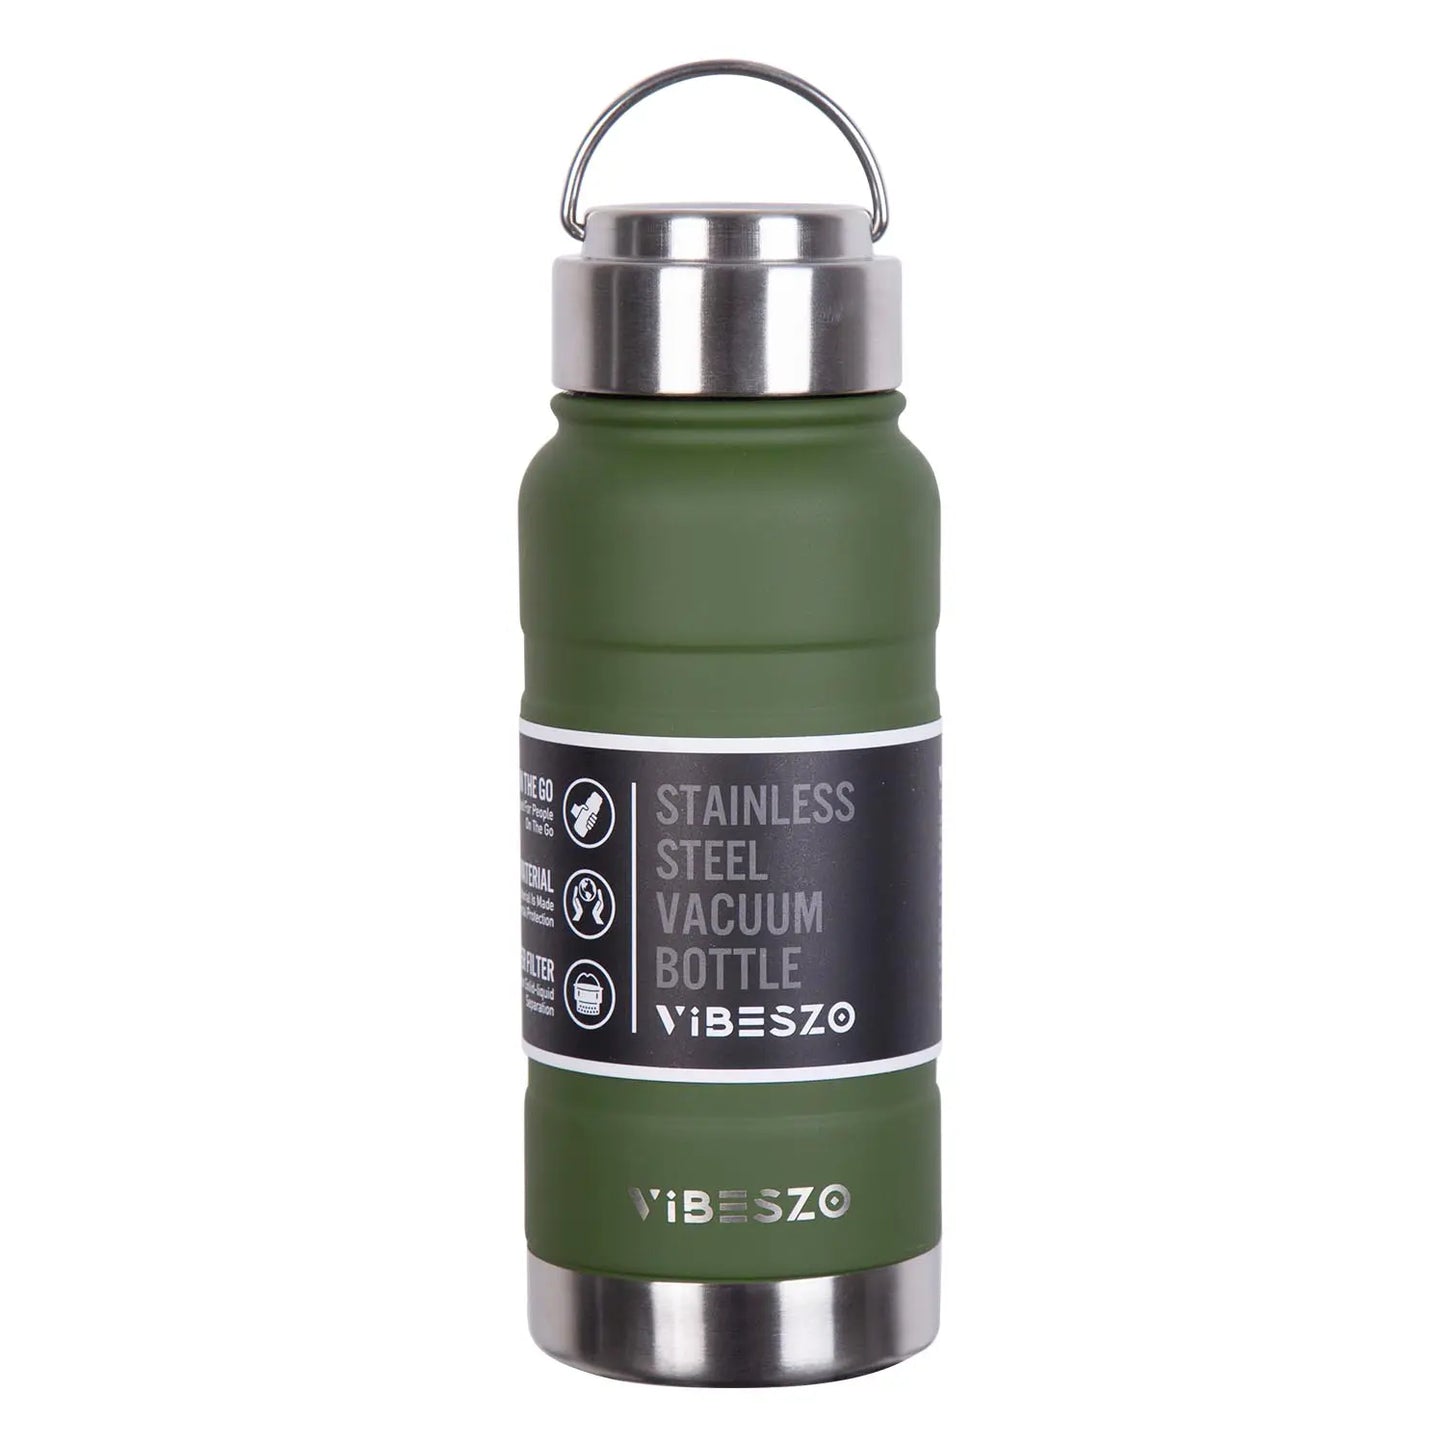 Vibeszo 不鏽鋼真空保溫瓶520ml 綠色Green